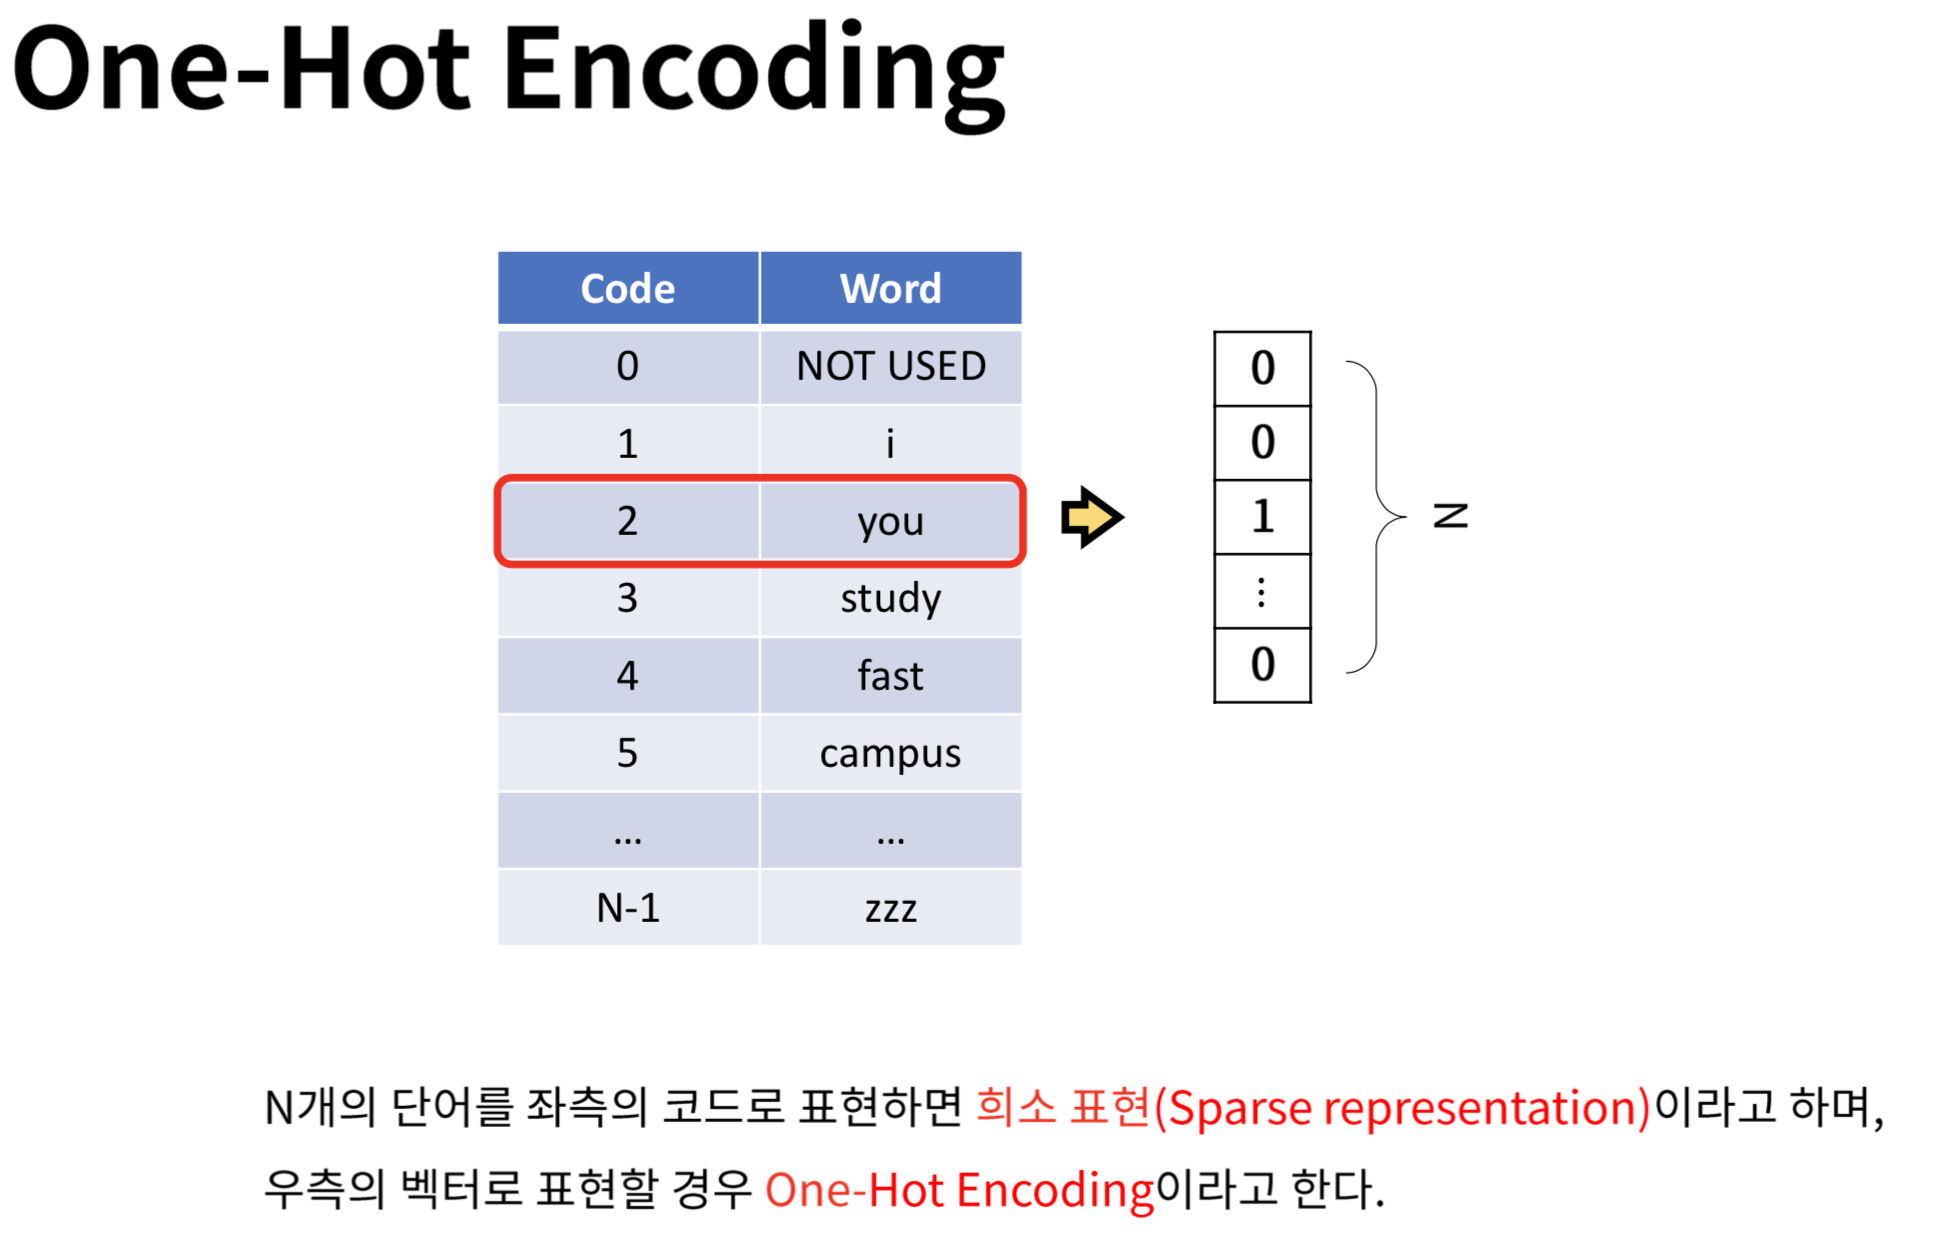 One-hot encoding